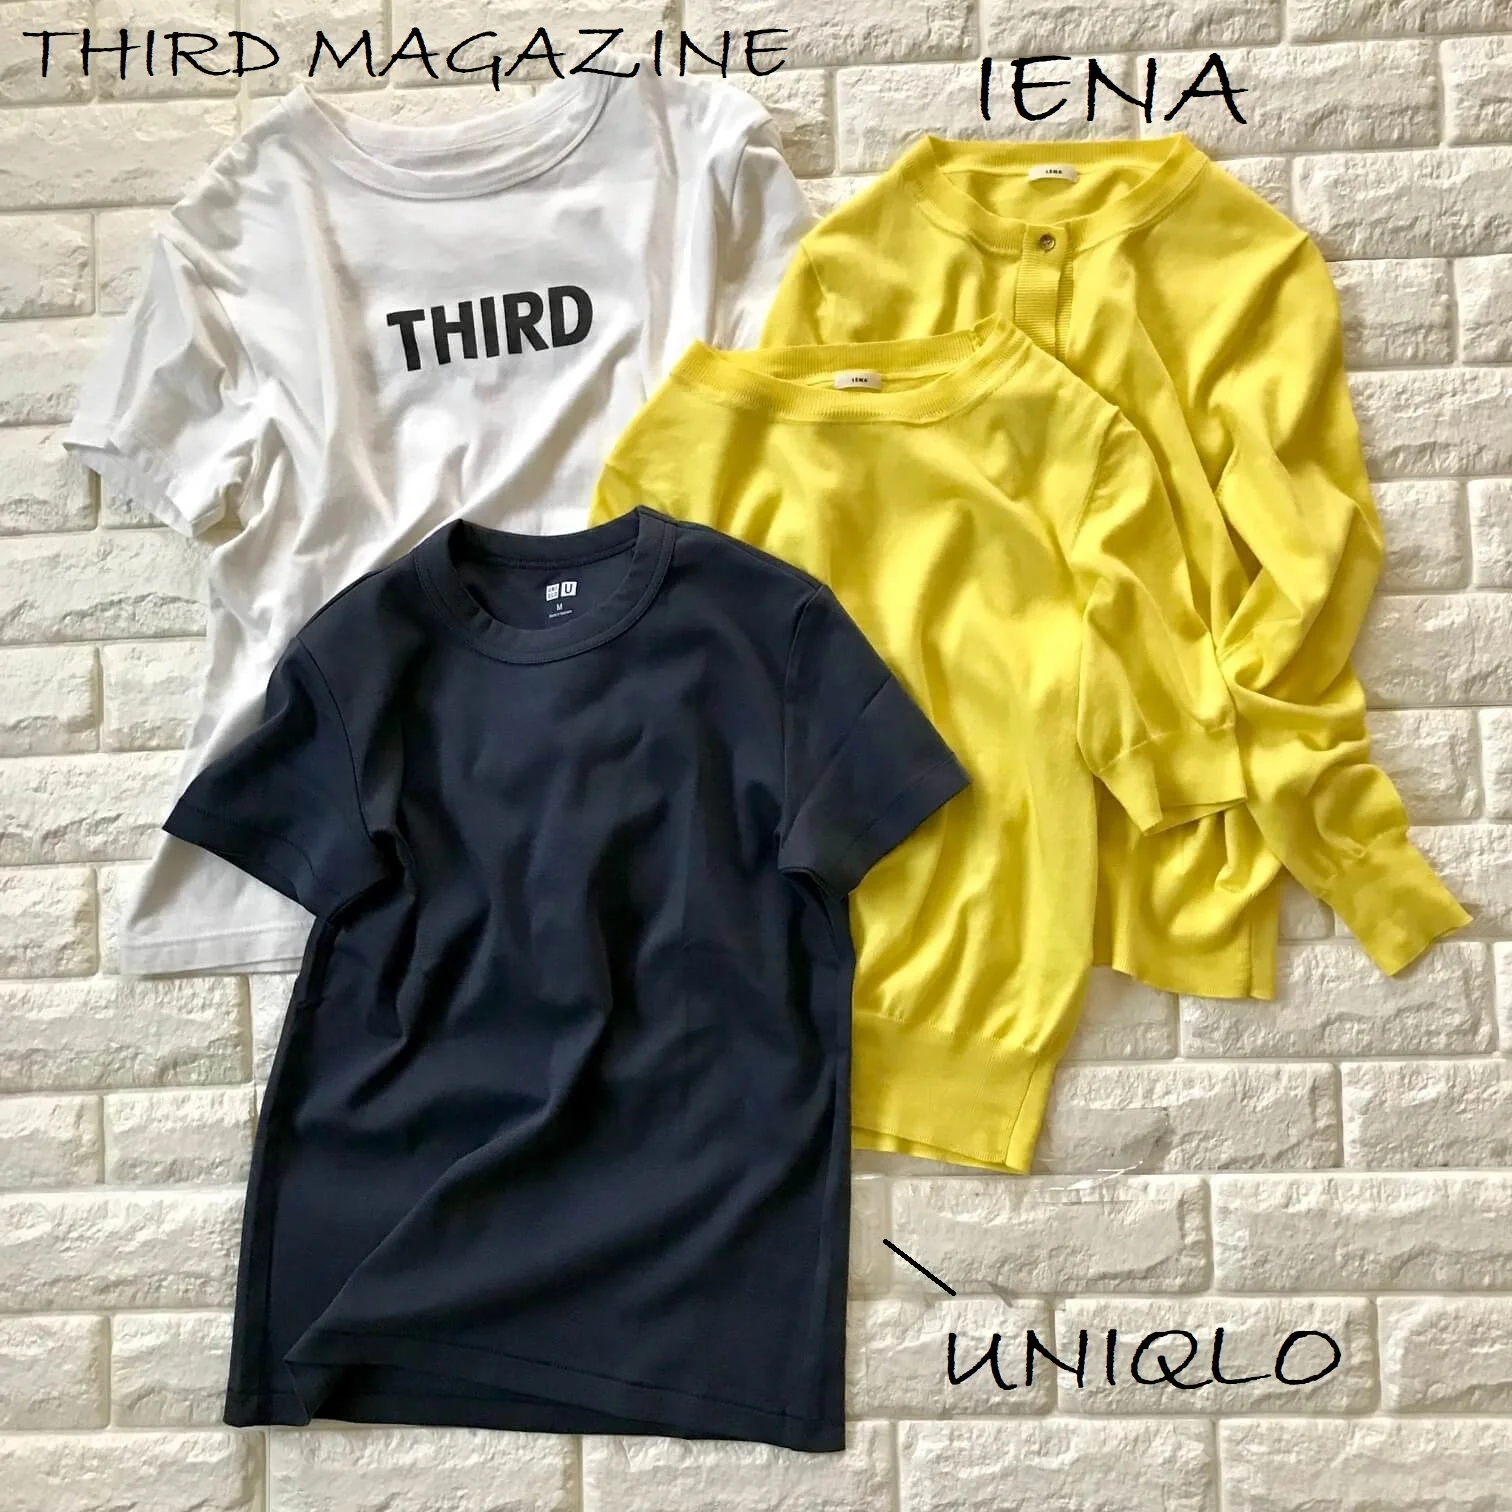 ユニクロとサードマガジンのTシャツ、イエナのツインニット画像